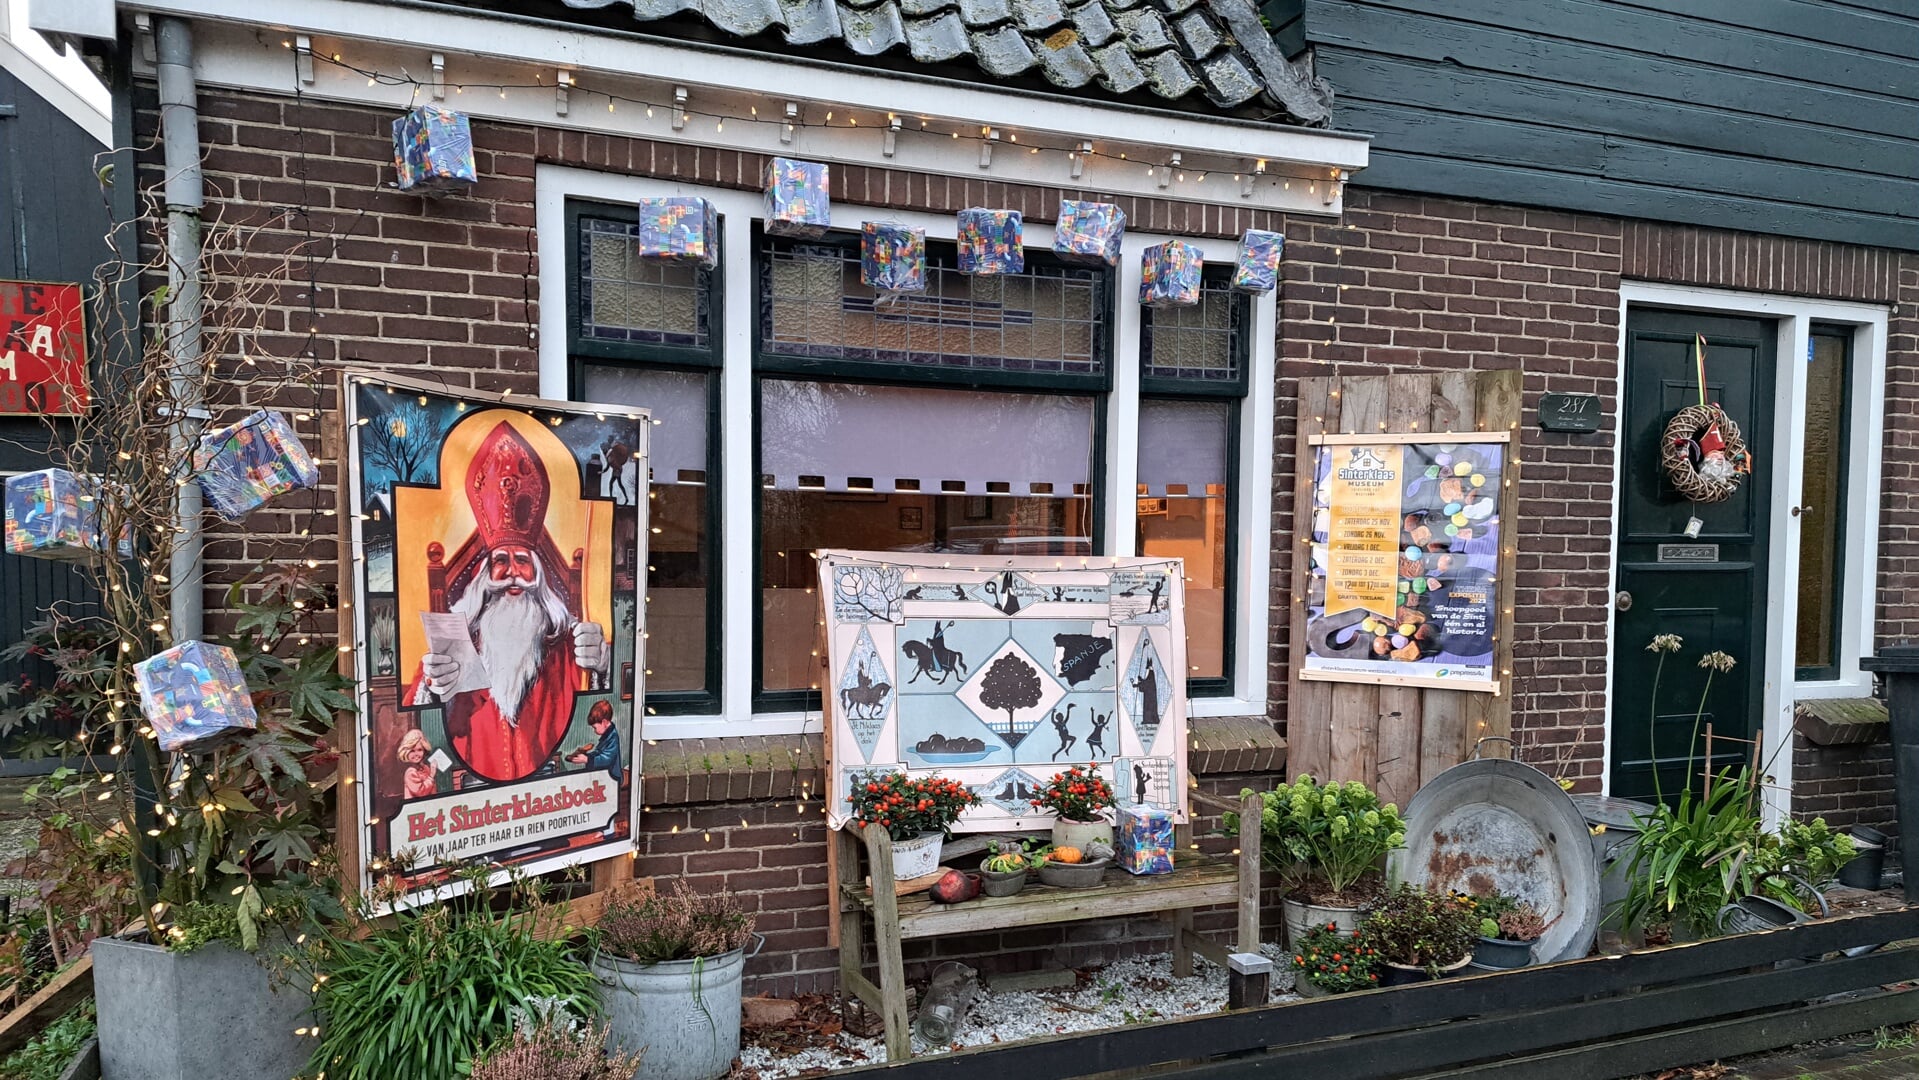 Meer weten over de zoete lekkernijen rond Sinterklaas? Kom dan naar het Sinterklaasmuseum in Westzaan. 